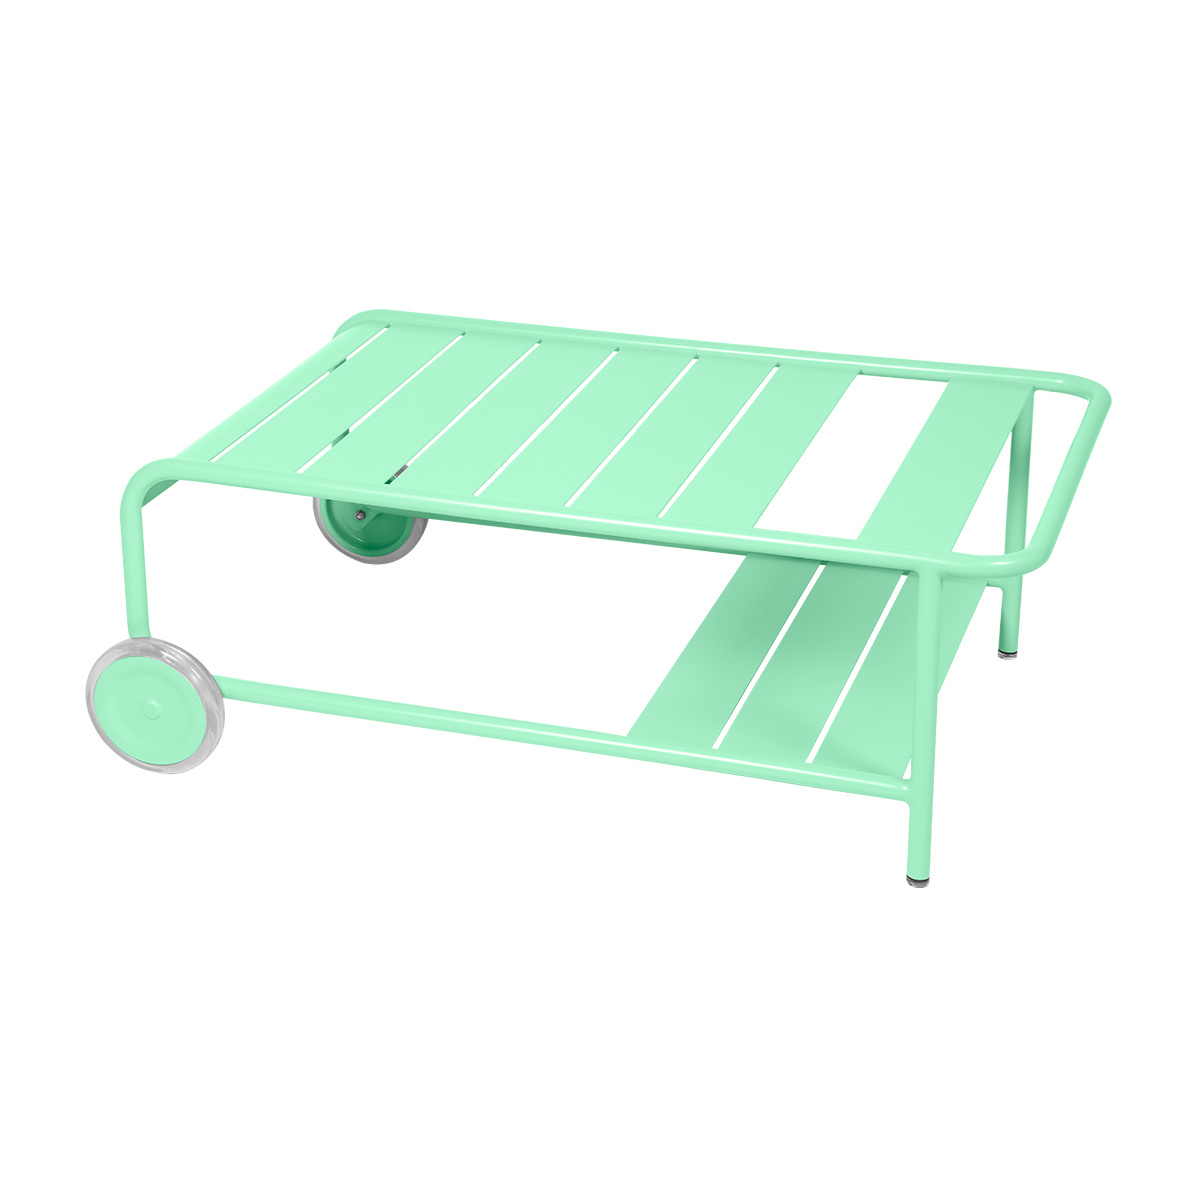 Fermob - Luxembourg niedriger Gartentisch mit Rollen - opalgrün/texturiert/LxBxH 105x65x39cm/UV-beständig von Fermob